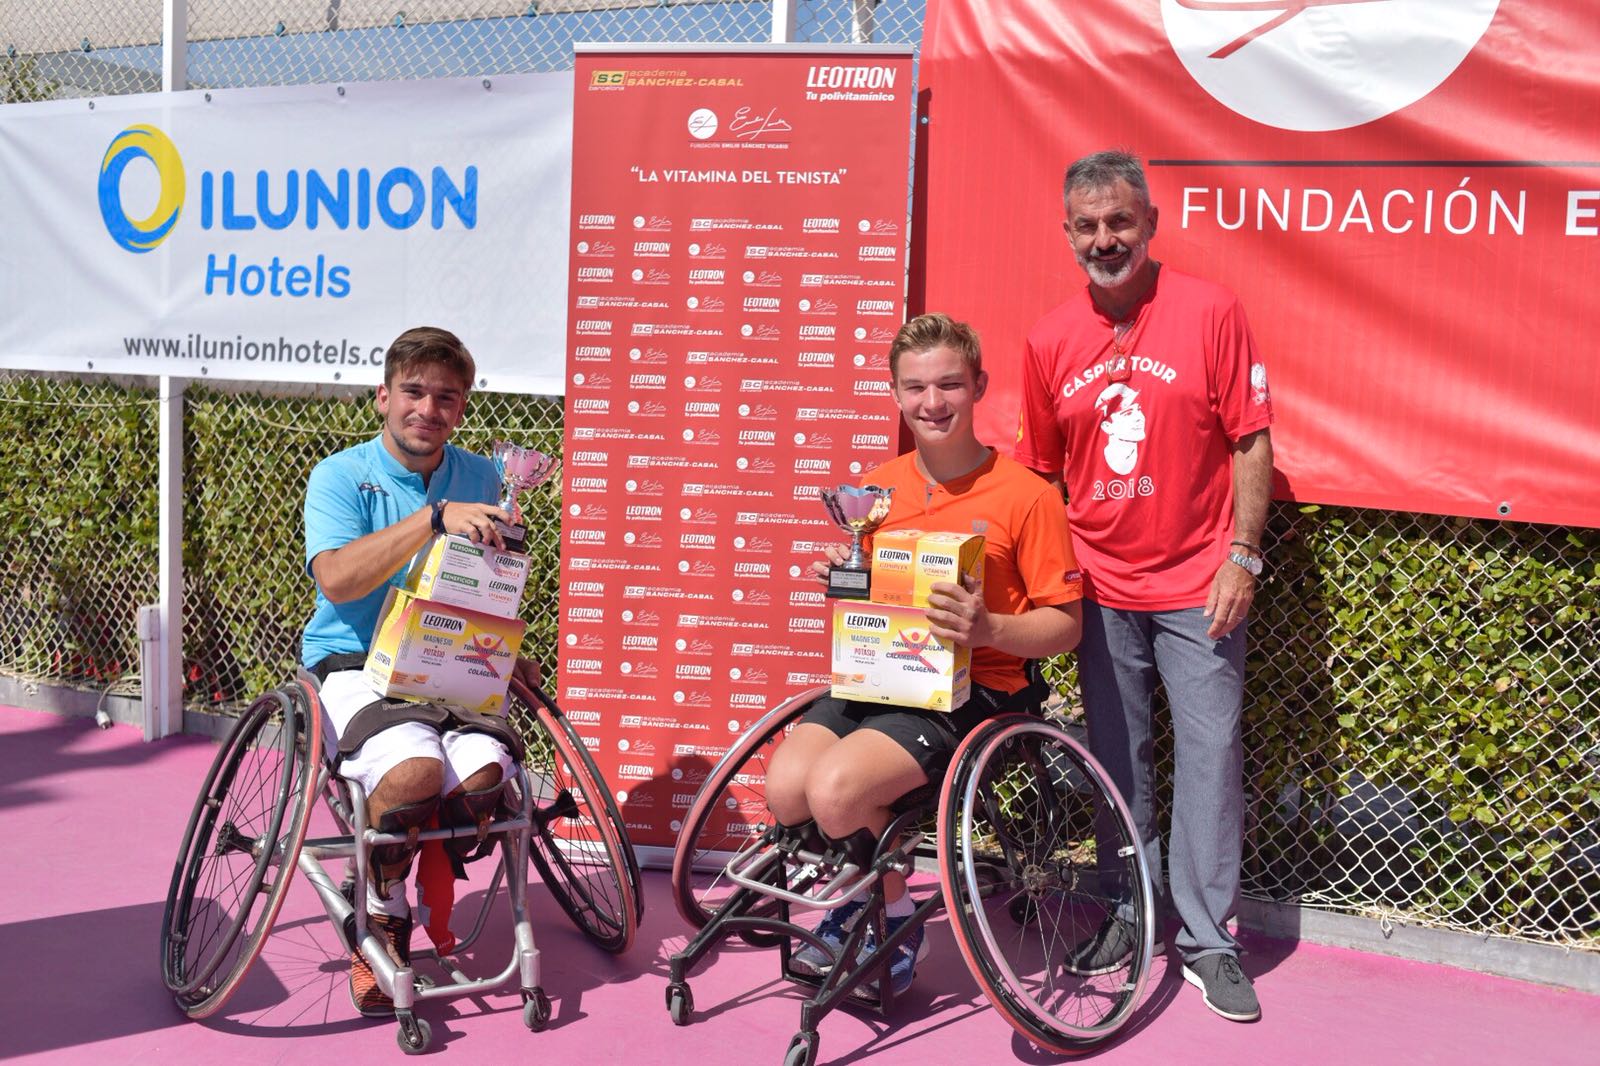 Image for Jef Vandorpe y Viktoriia Lvova campeones VII ITF Wheelchair Fundación Emilio Sánchez Vicario